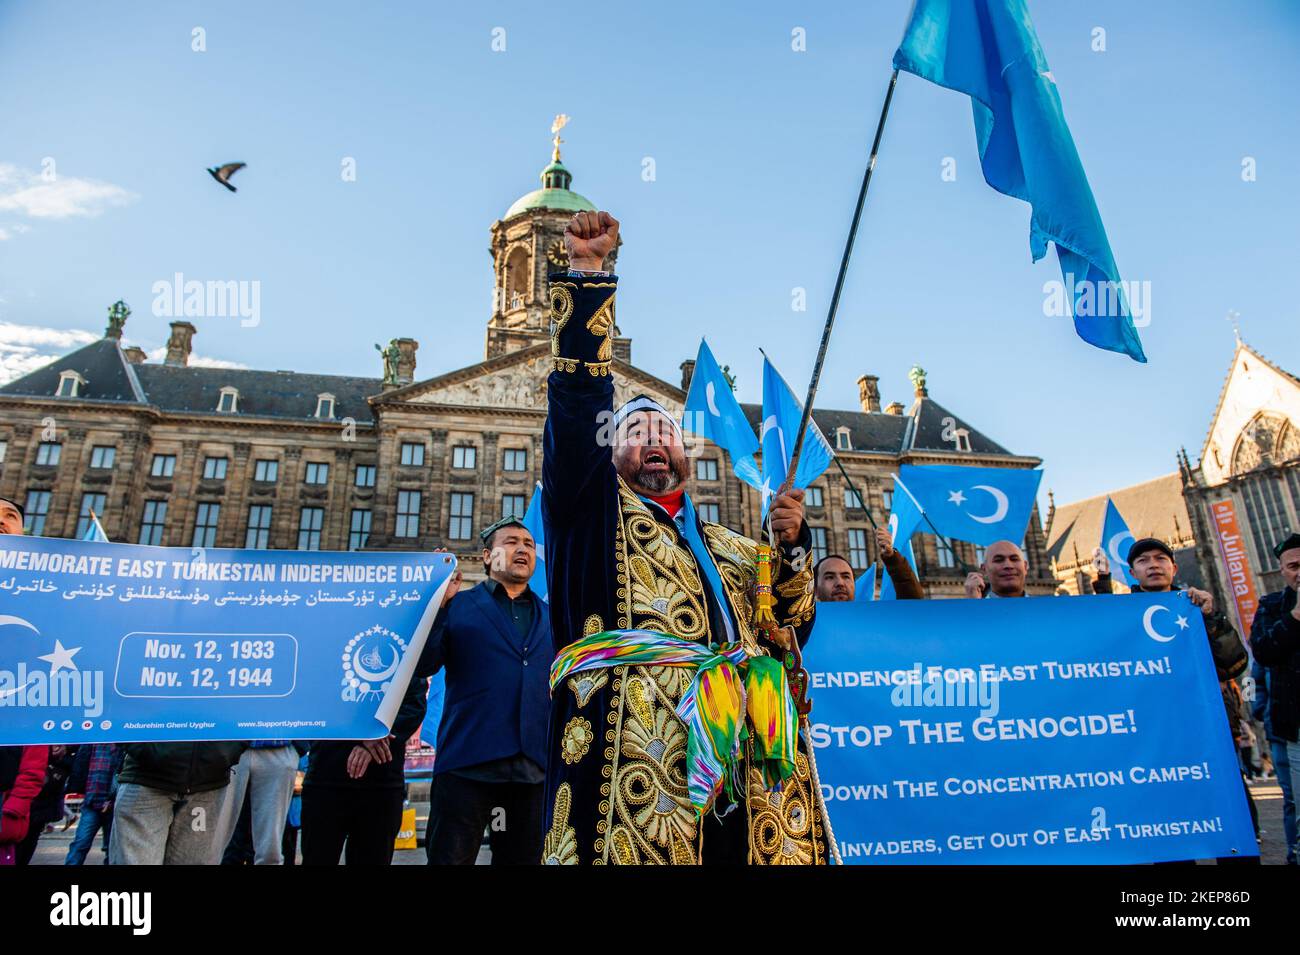 Un homme portant des vêtements traditionnels d'Uyghur est vu élever son poing dans les airs et tenir le drapeau d'Uyghur lors d'un événement commémorant la « Journée nationale du Turkestan oriental ». 12 novembre fête la République du Turkestan oriental, Qui est également connu sous le nom de la région autonome d'Uyghur du Xinjiang en Chine, la communauté d'Uyghur vivant aux pays-Bas, a organisé un événement pour commémorer la « Journée nationale du Turkestan oriental » et pour continuer à lutter contre le gouvernement chinois afin de reprendre leur indépendance. Le gouvernement chinois aurait détenu plus d'un million de musulmans dans le cadre d'une rééducation Banque D'Images